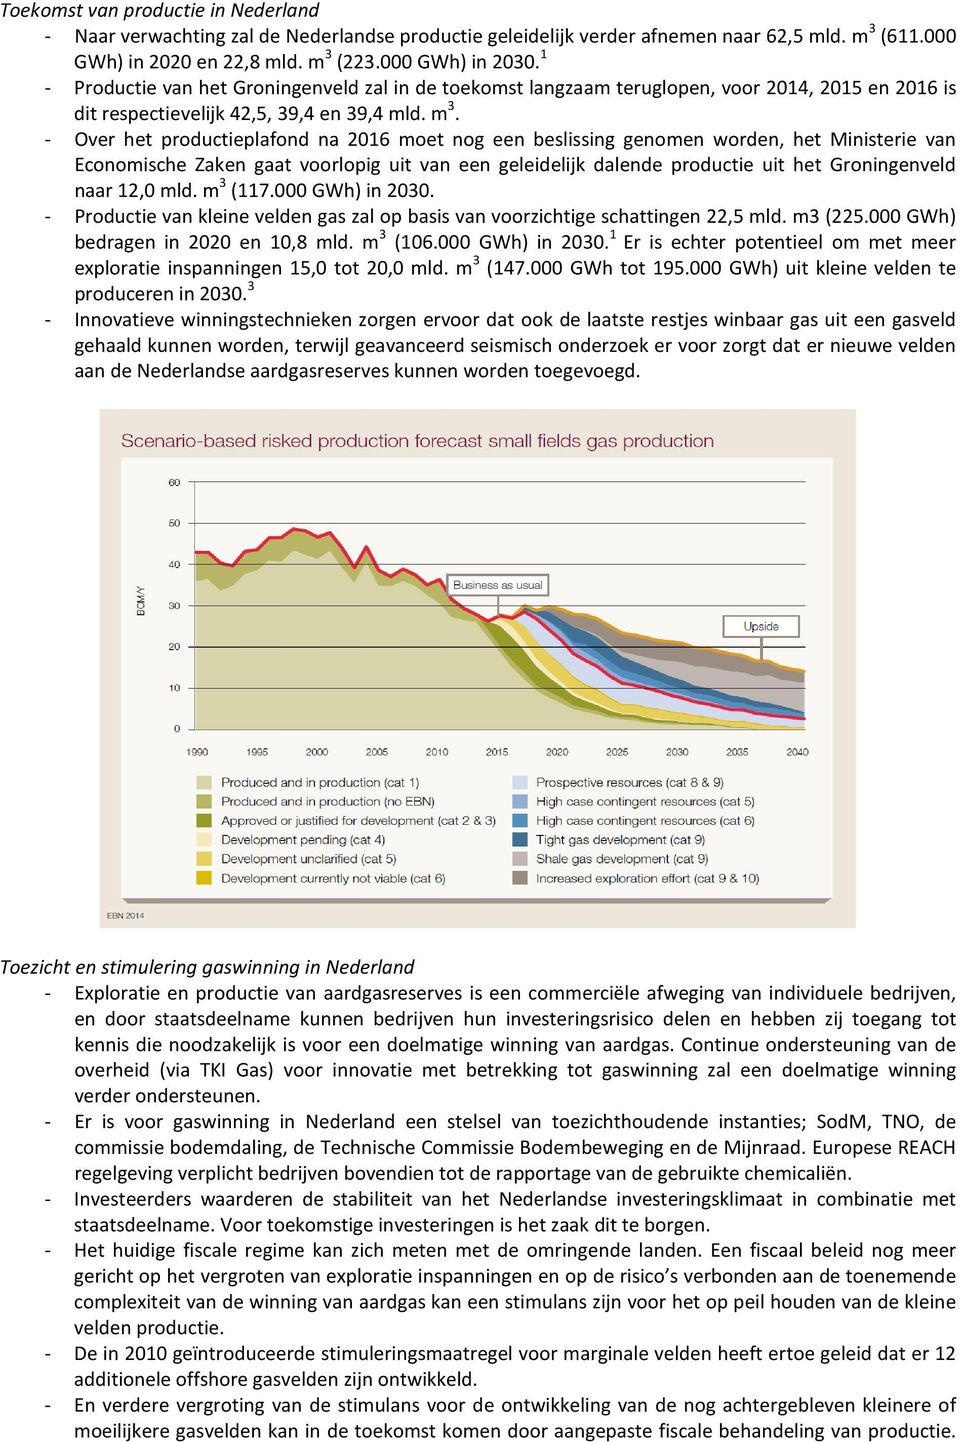 - Over het productieplafond na 2016 moet nog een beslissing genomen worden, het Ministerie van Economische Zaken gaat voorlopig uit van een geleidelijk dalende productie uit het Groningenveld naar